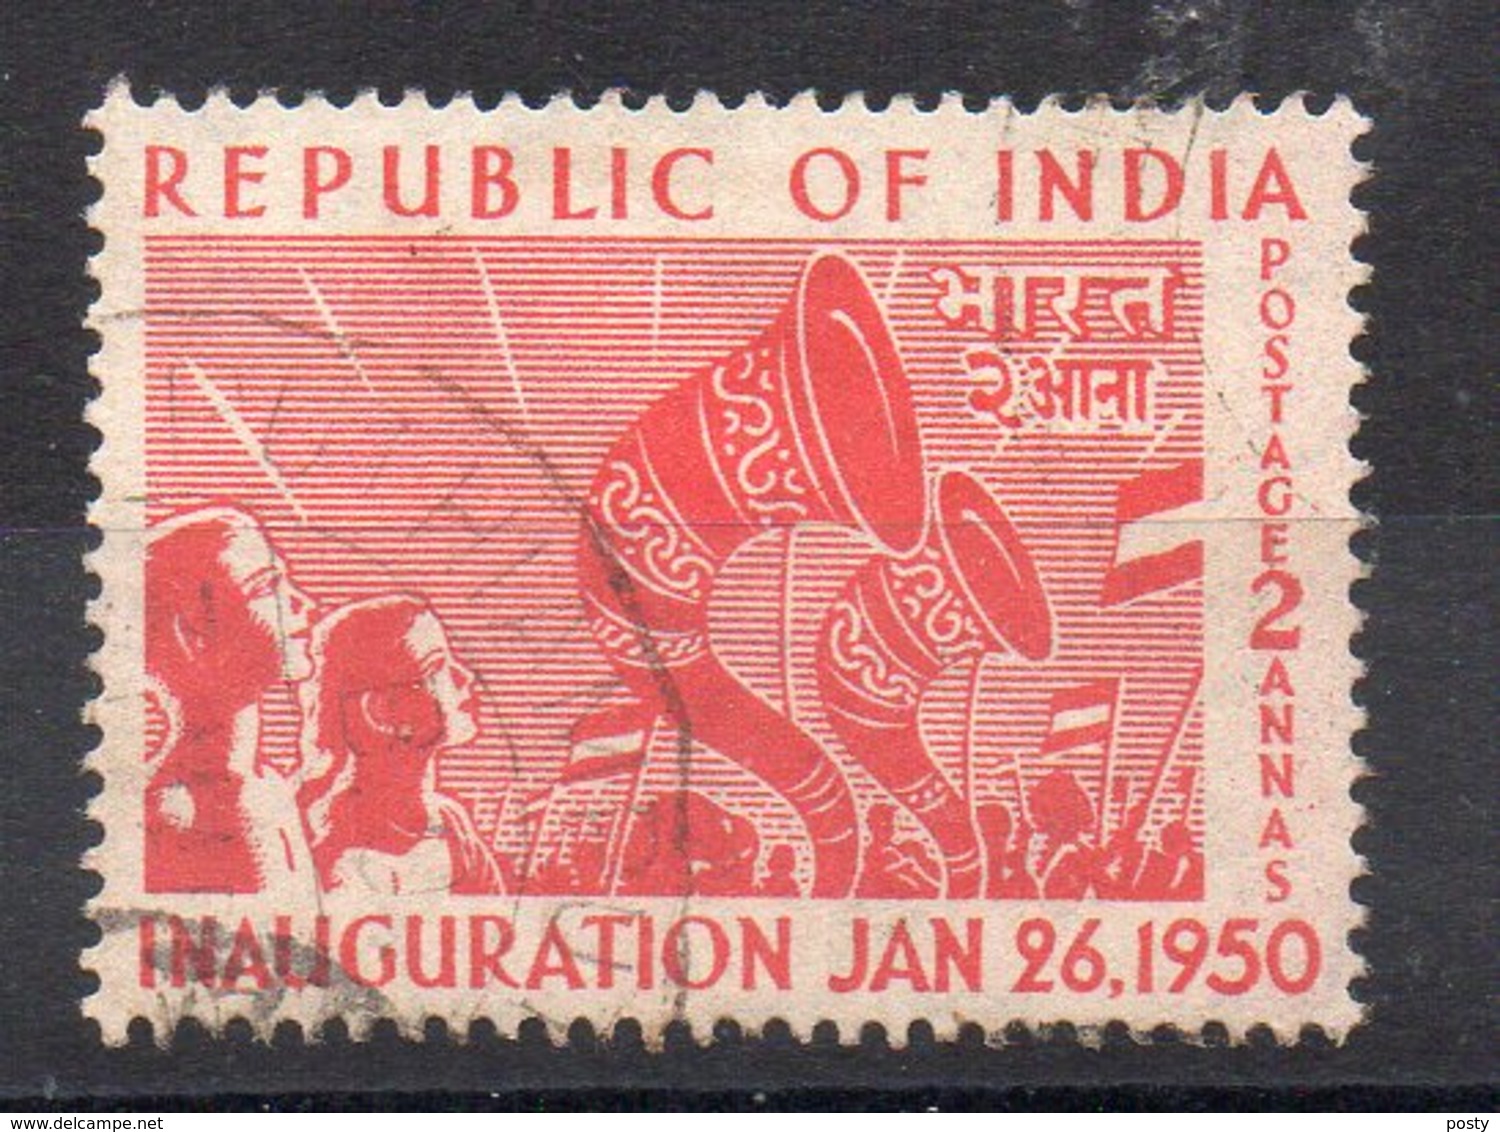 INDE - INDIA - 1950 - INAUGURATION DAY - FETE DE L'INDEPENDANCE - 2 - Oblitéré - Used - - Oblitérés